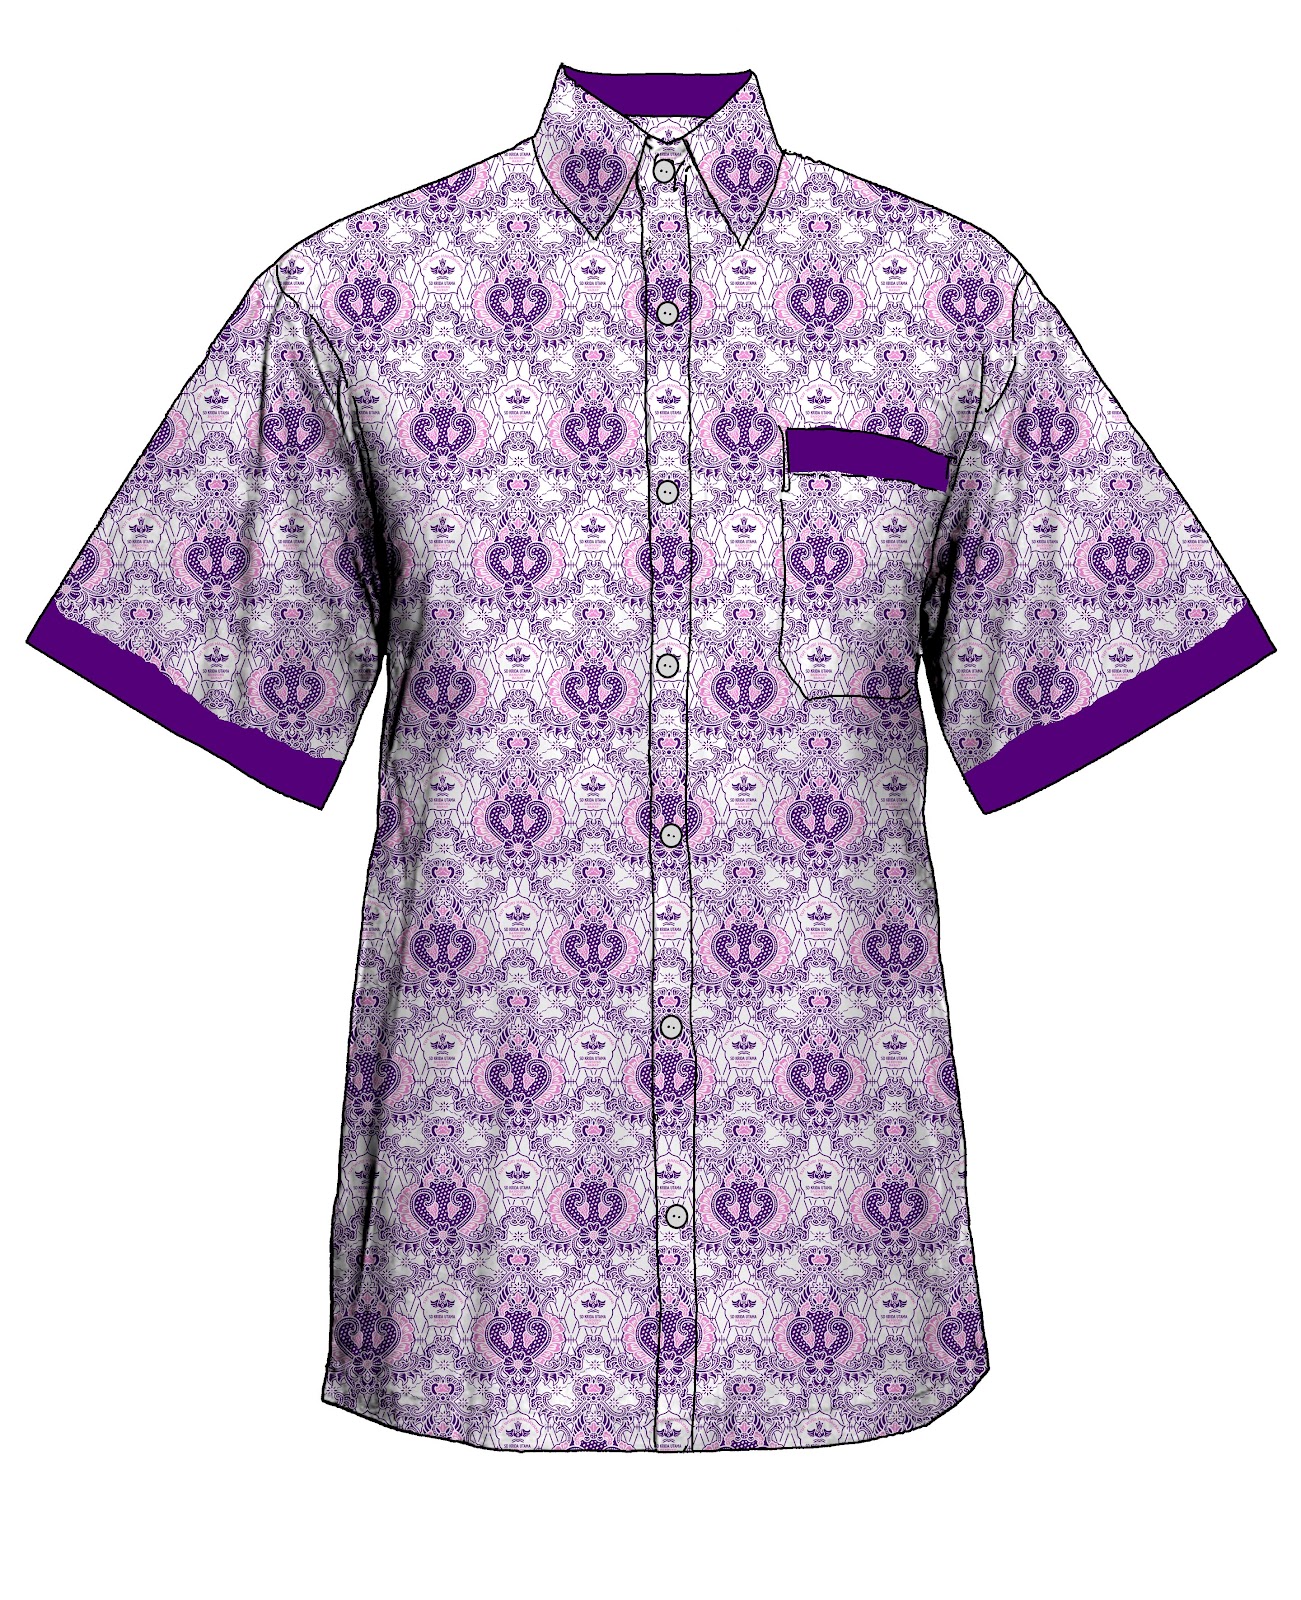 7 Model Baju Batik Seragam Sekolah Modern Terbaru 2016